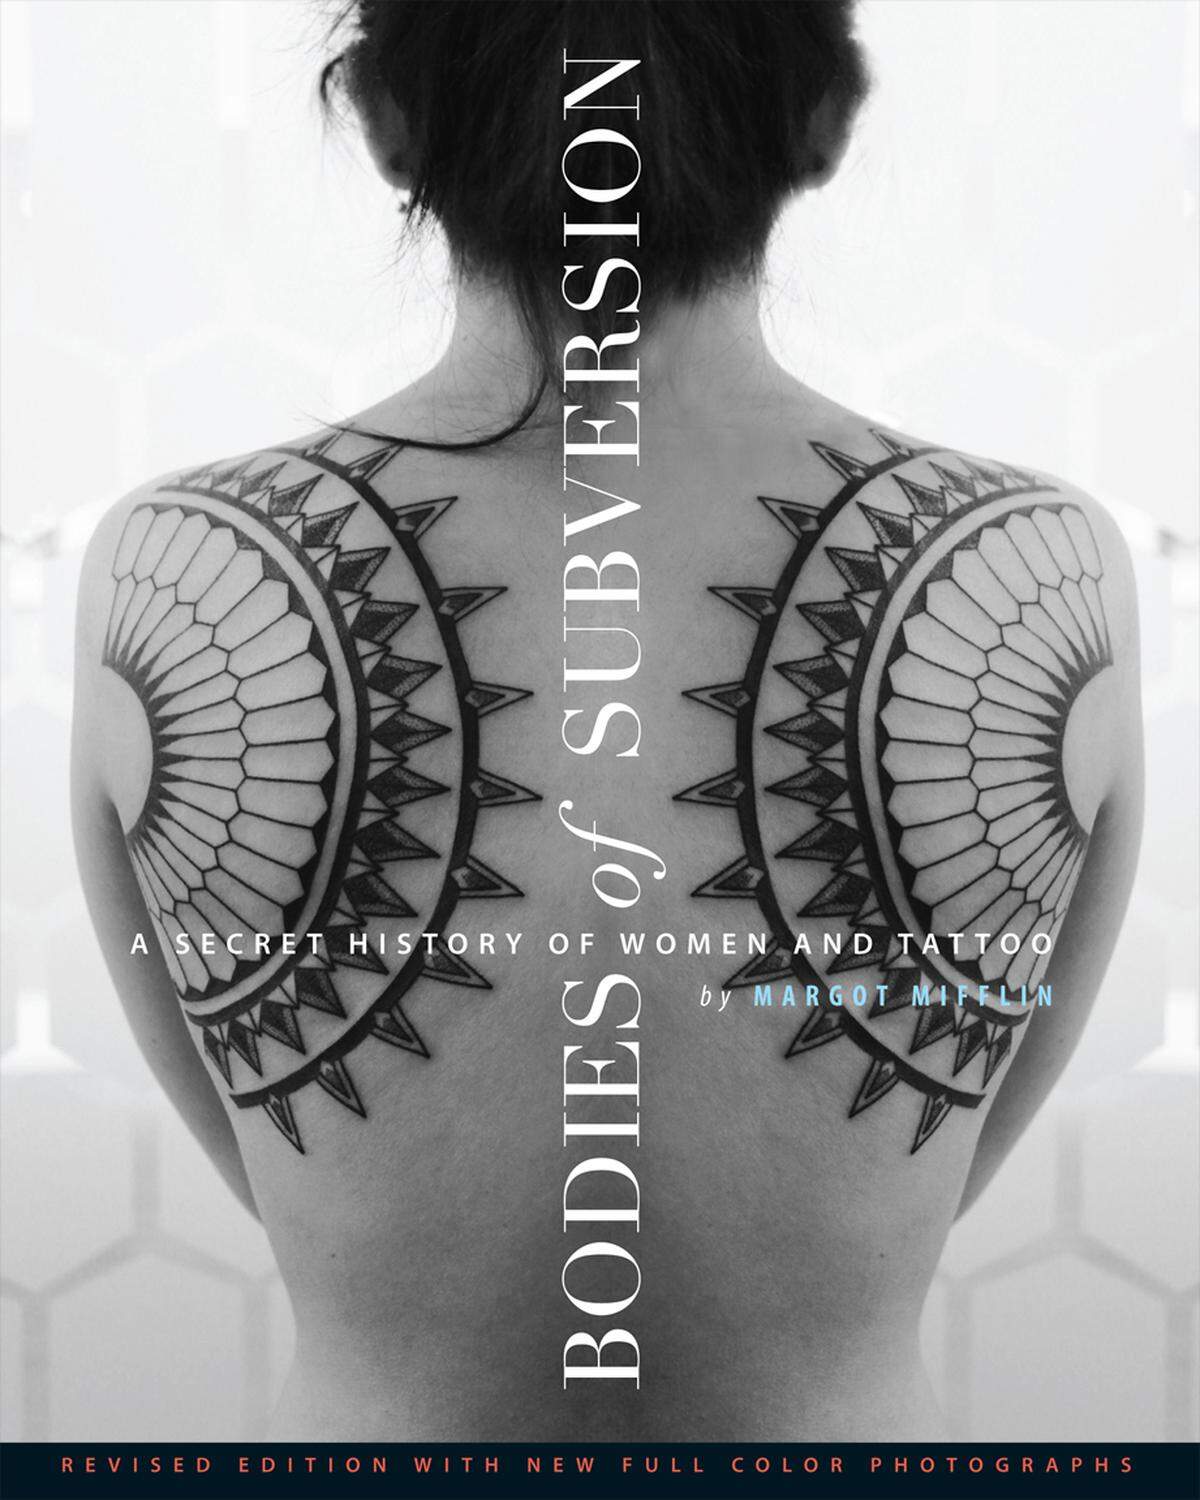 Bodies of Subversion: A Secret History of Women and Tattoo von Margot Mifflin über Powerhouse Books. 160 Seiten, 200 Farbfotografien. Erhältlich auch über amazon.de, 17,40 Euro.